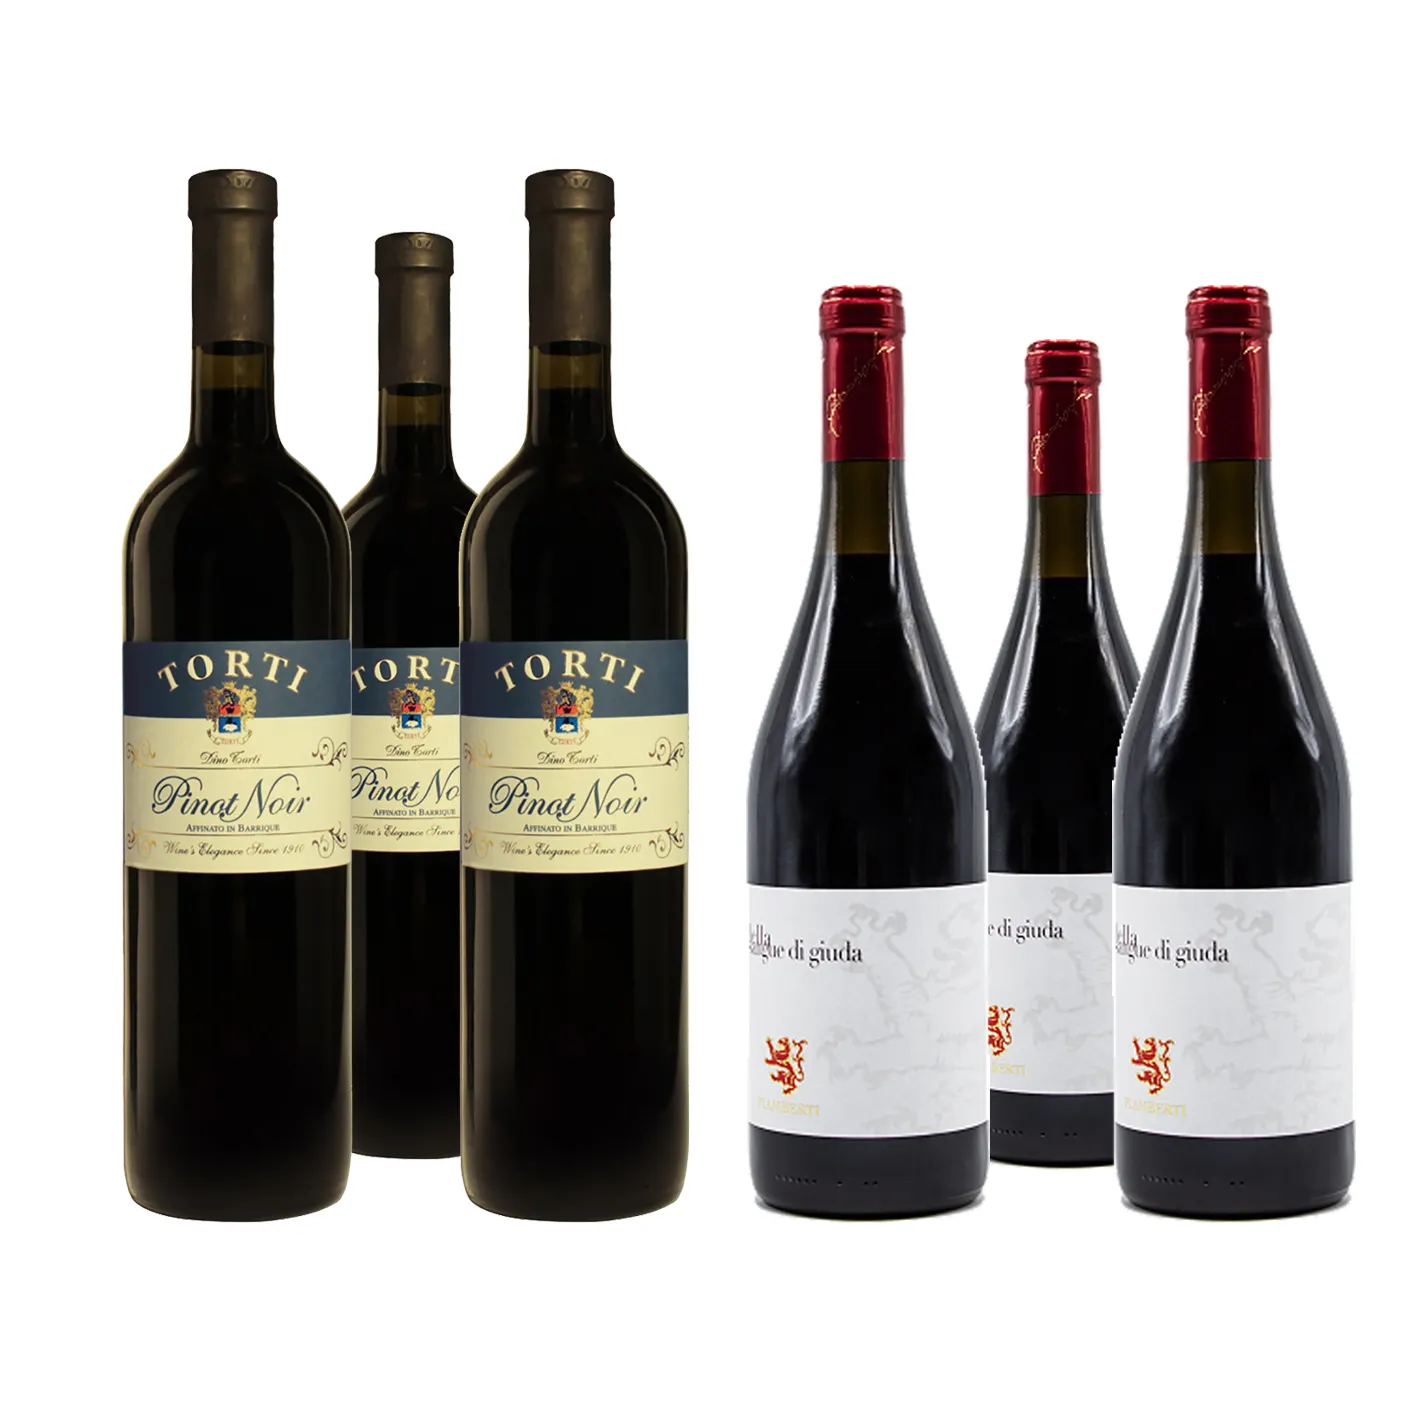 레드 와인 상자 "3 Pinot Noir Barrique 및 3 Sangue di Giuda - 750 ml 병 이탈리아 와인 알코올 음료